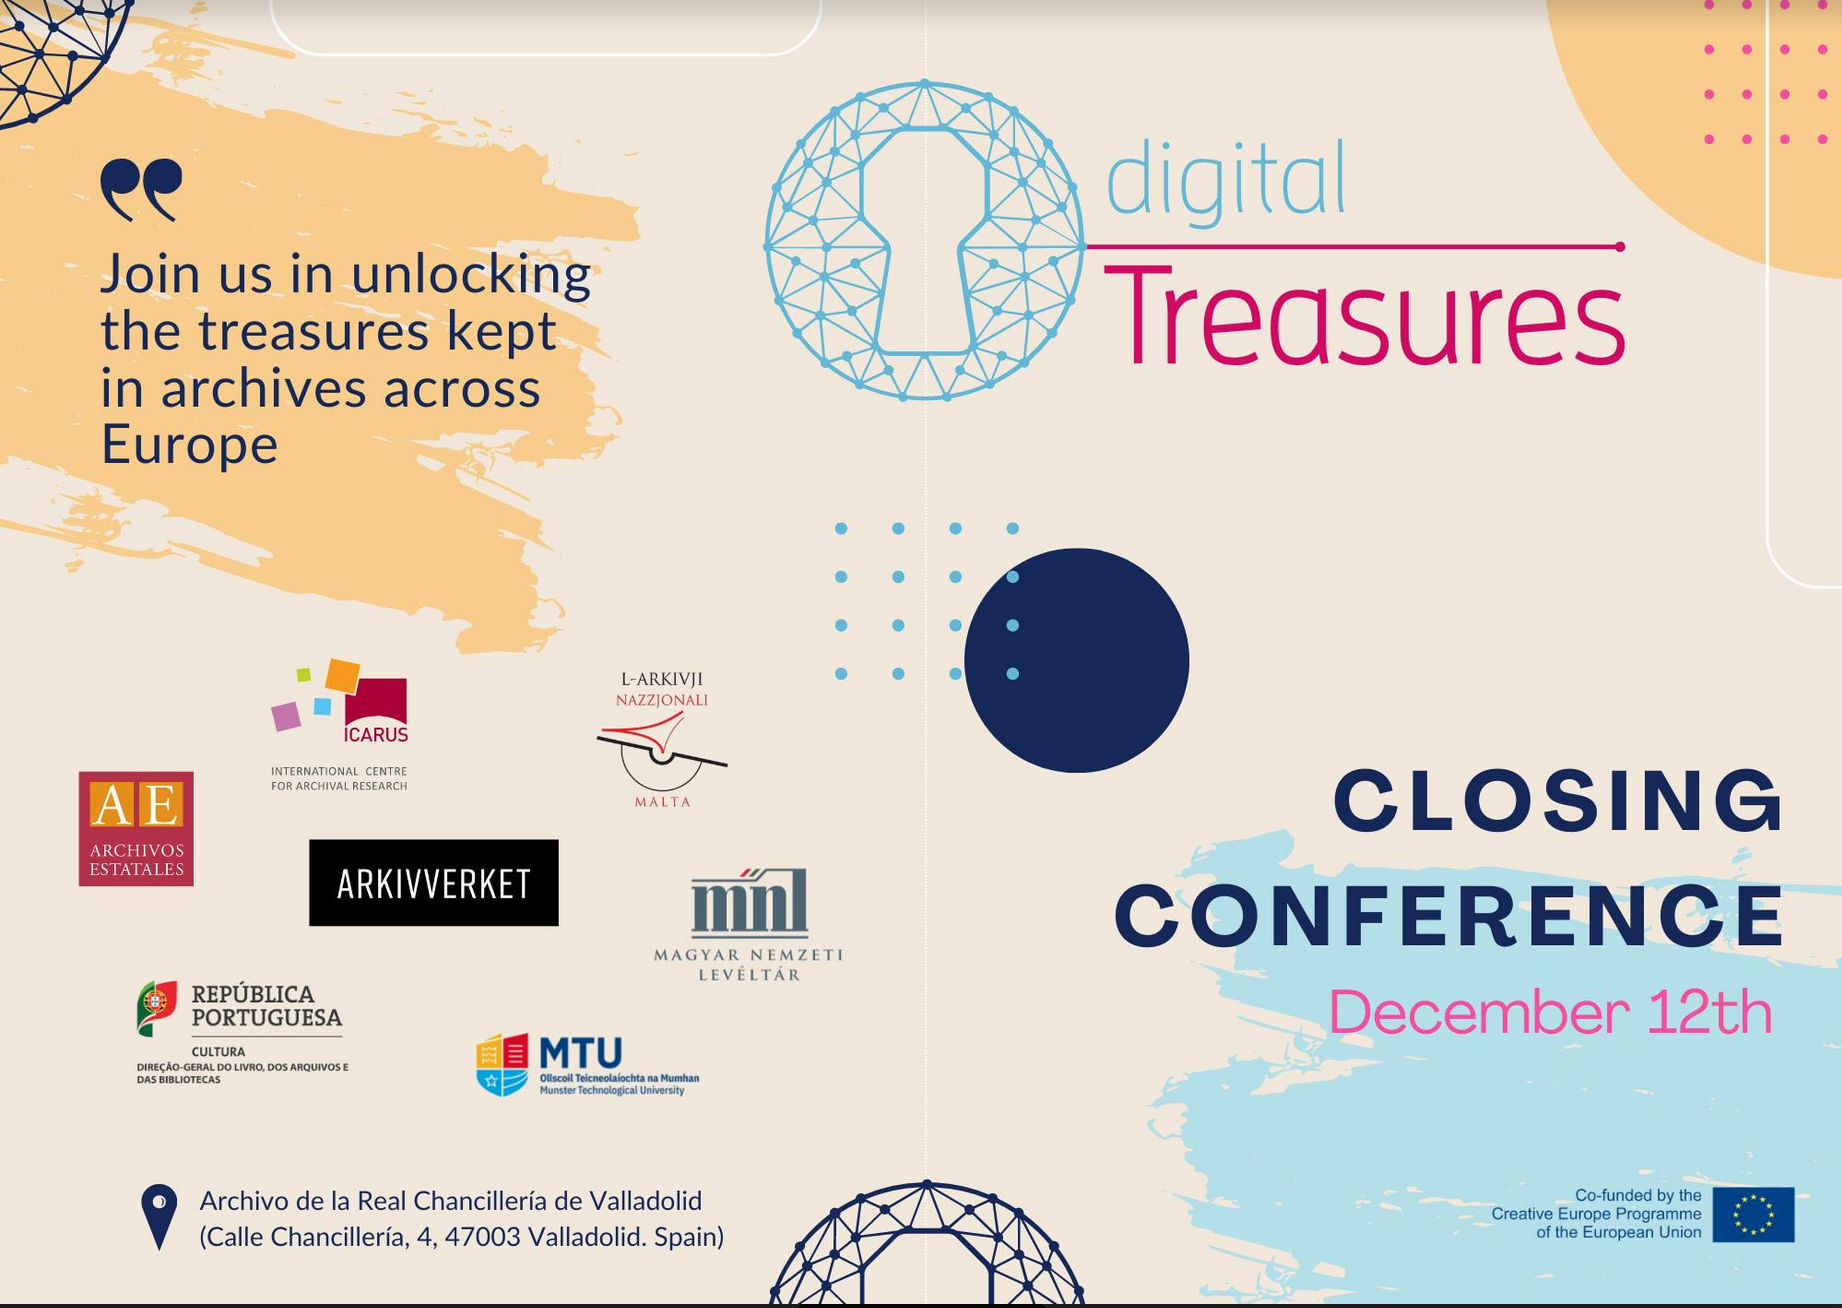 Proyecto Digital Treasures. Conferencia de cierre